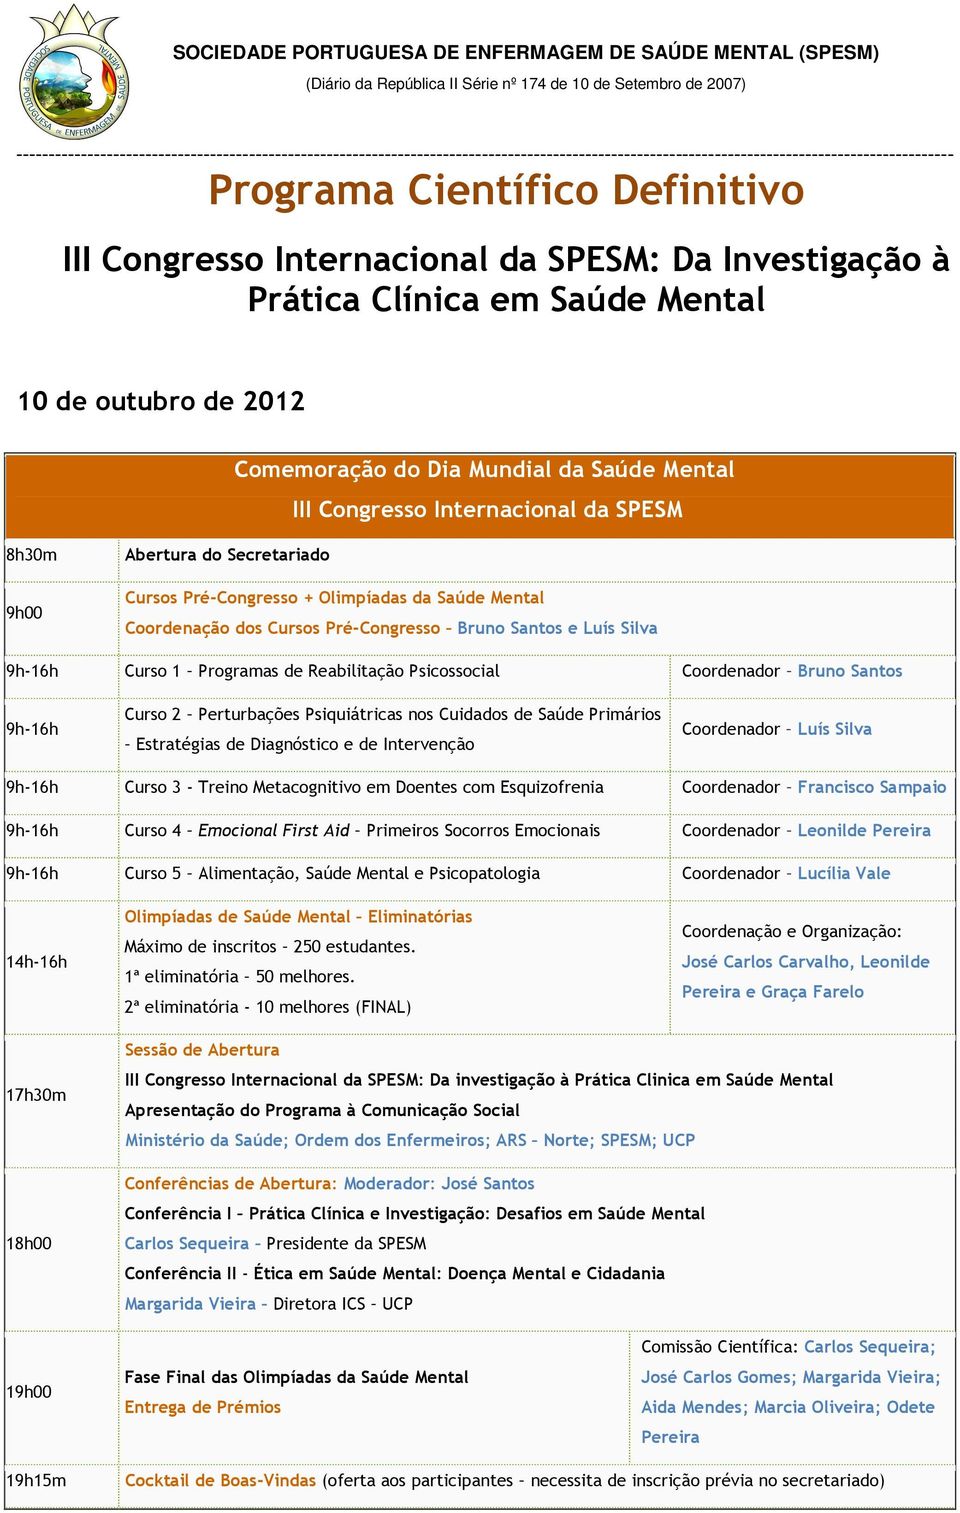 Reabilitação Psicossocial Coordenador Bruno Santos 9h-16h Curso 2 Perturbações Psiquiátricas nos Cuidados de Saúde Primários Estratégias de Diagnóstico e de Intervenção Coordenador Luís Silva 9h-16h